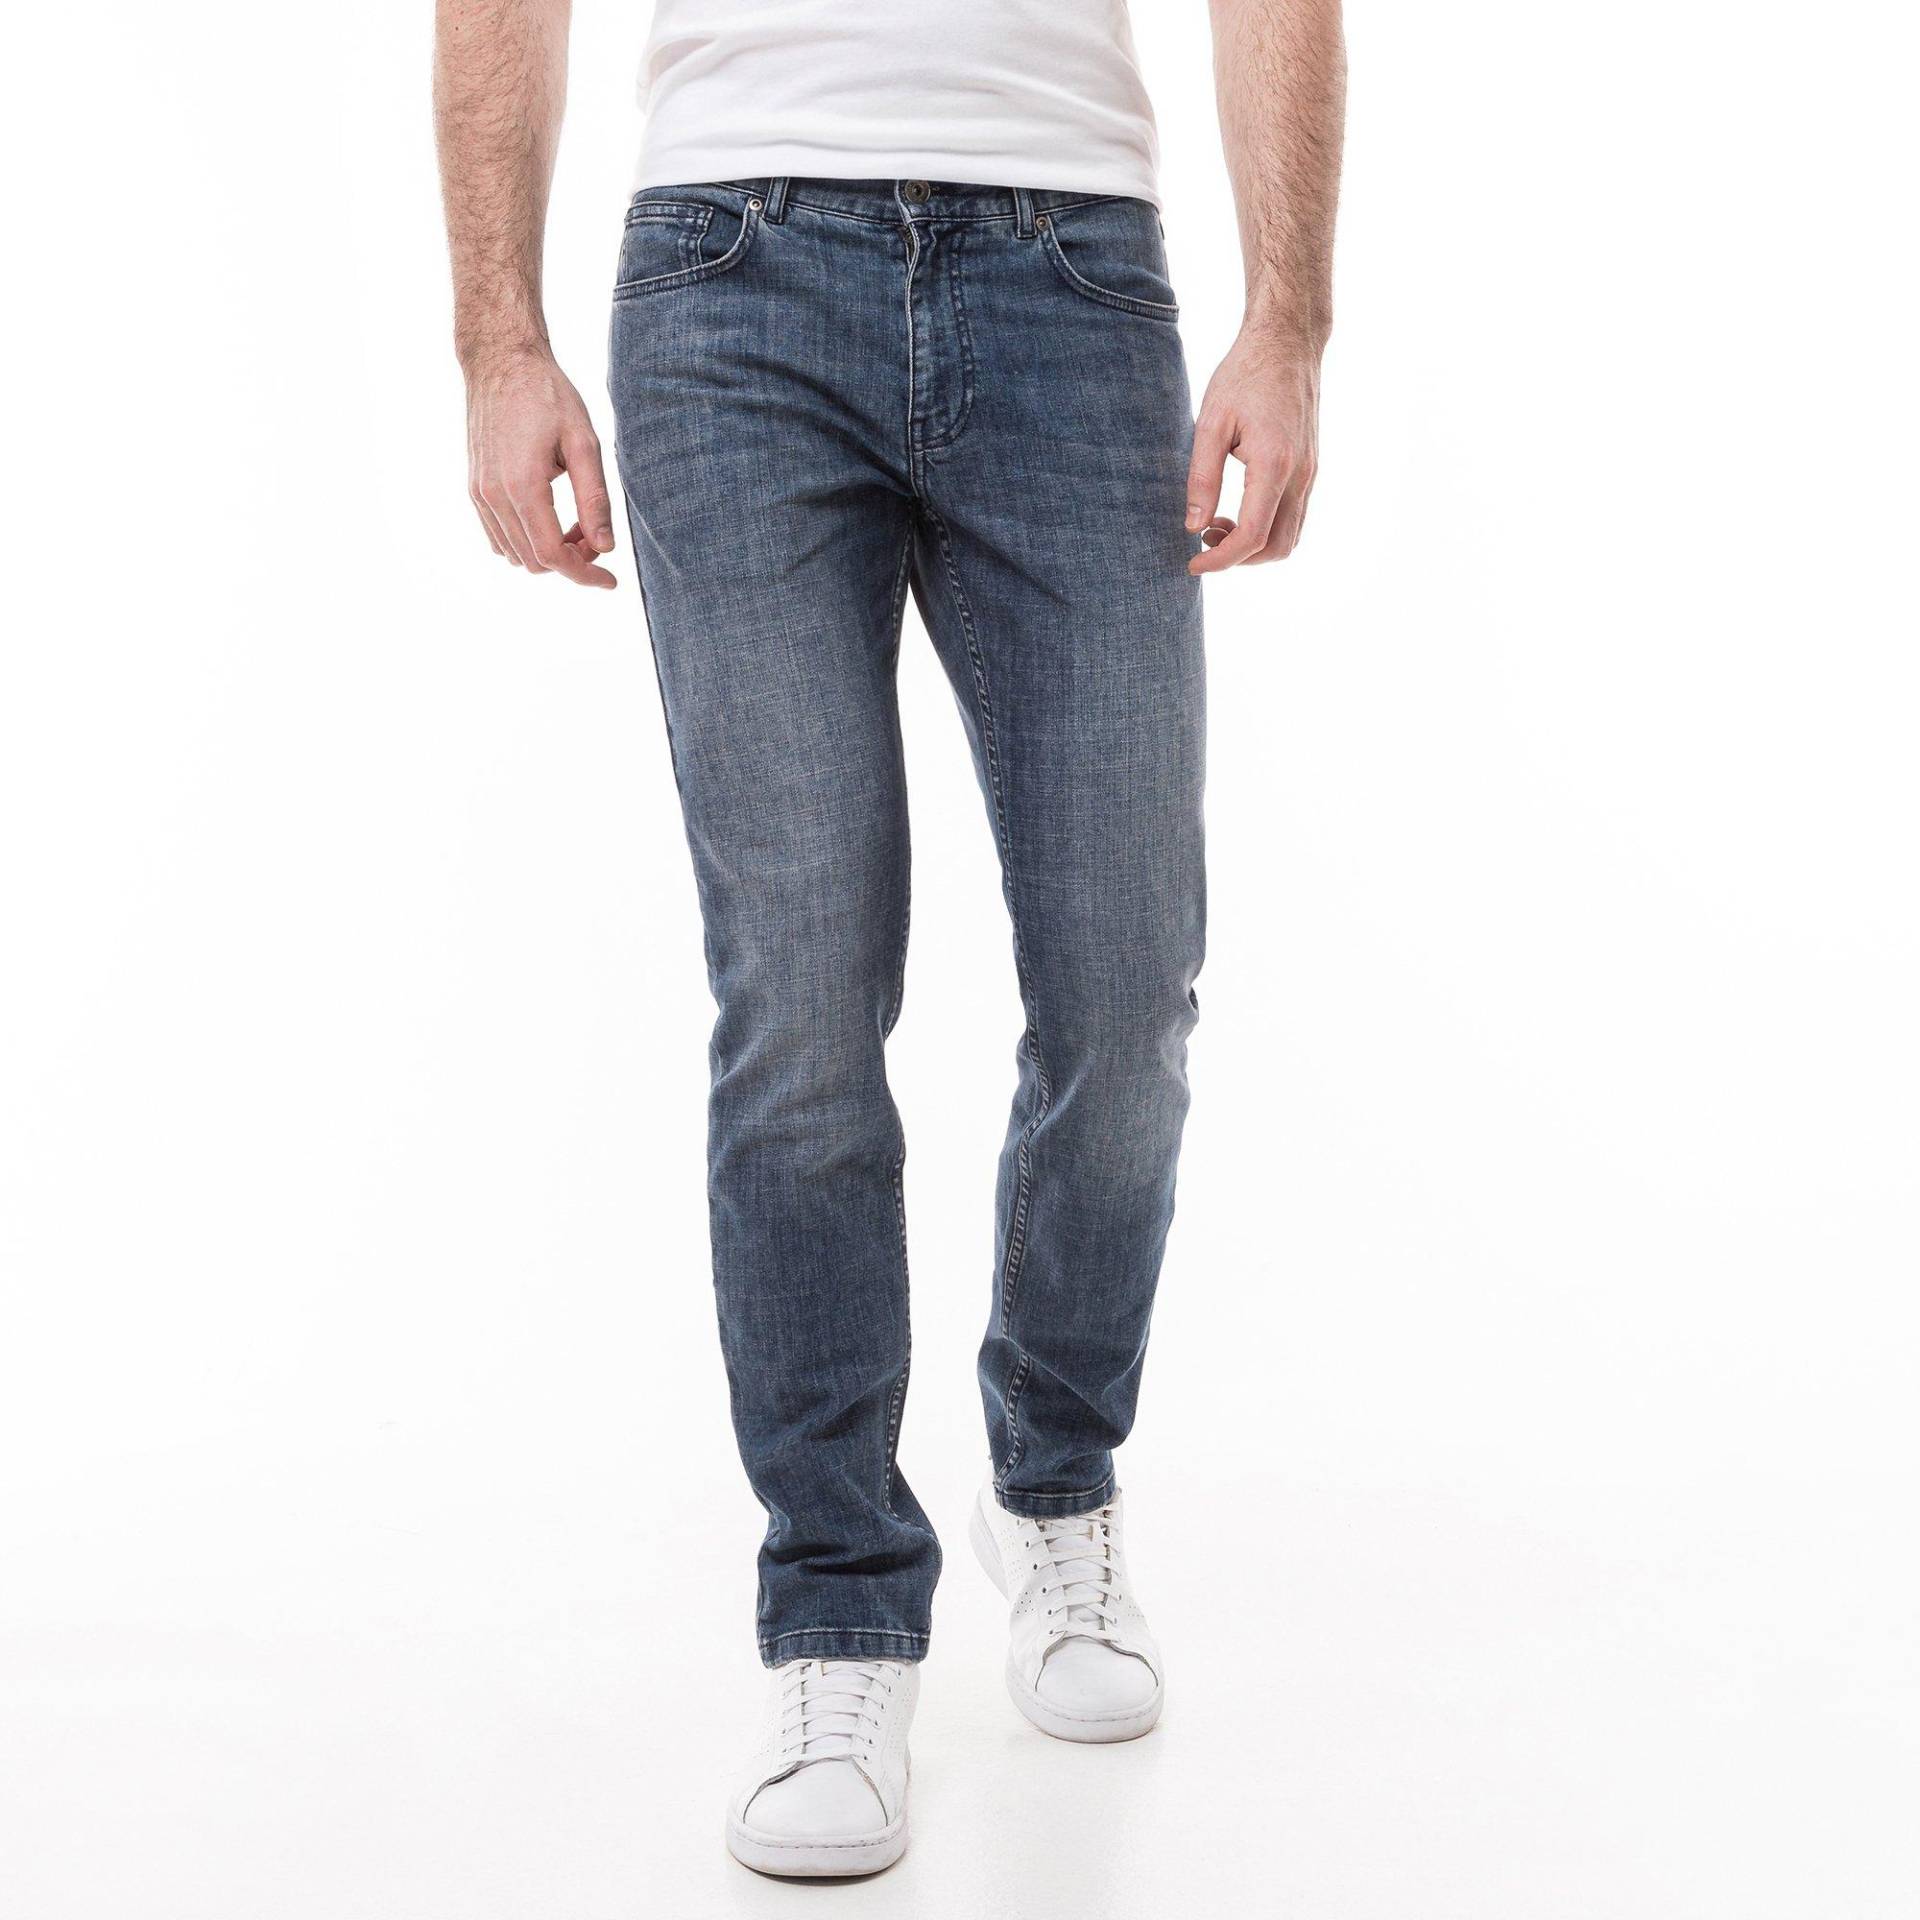 Jeans, Slim Fit Herren Blau Denim L34/W33 von Manor Man